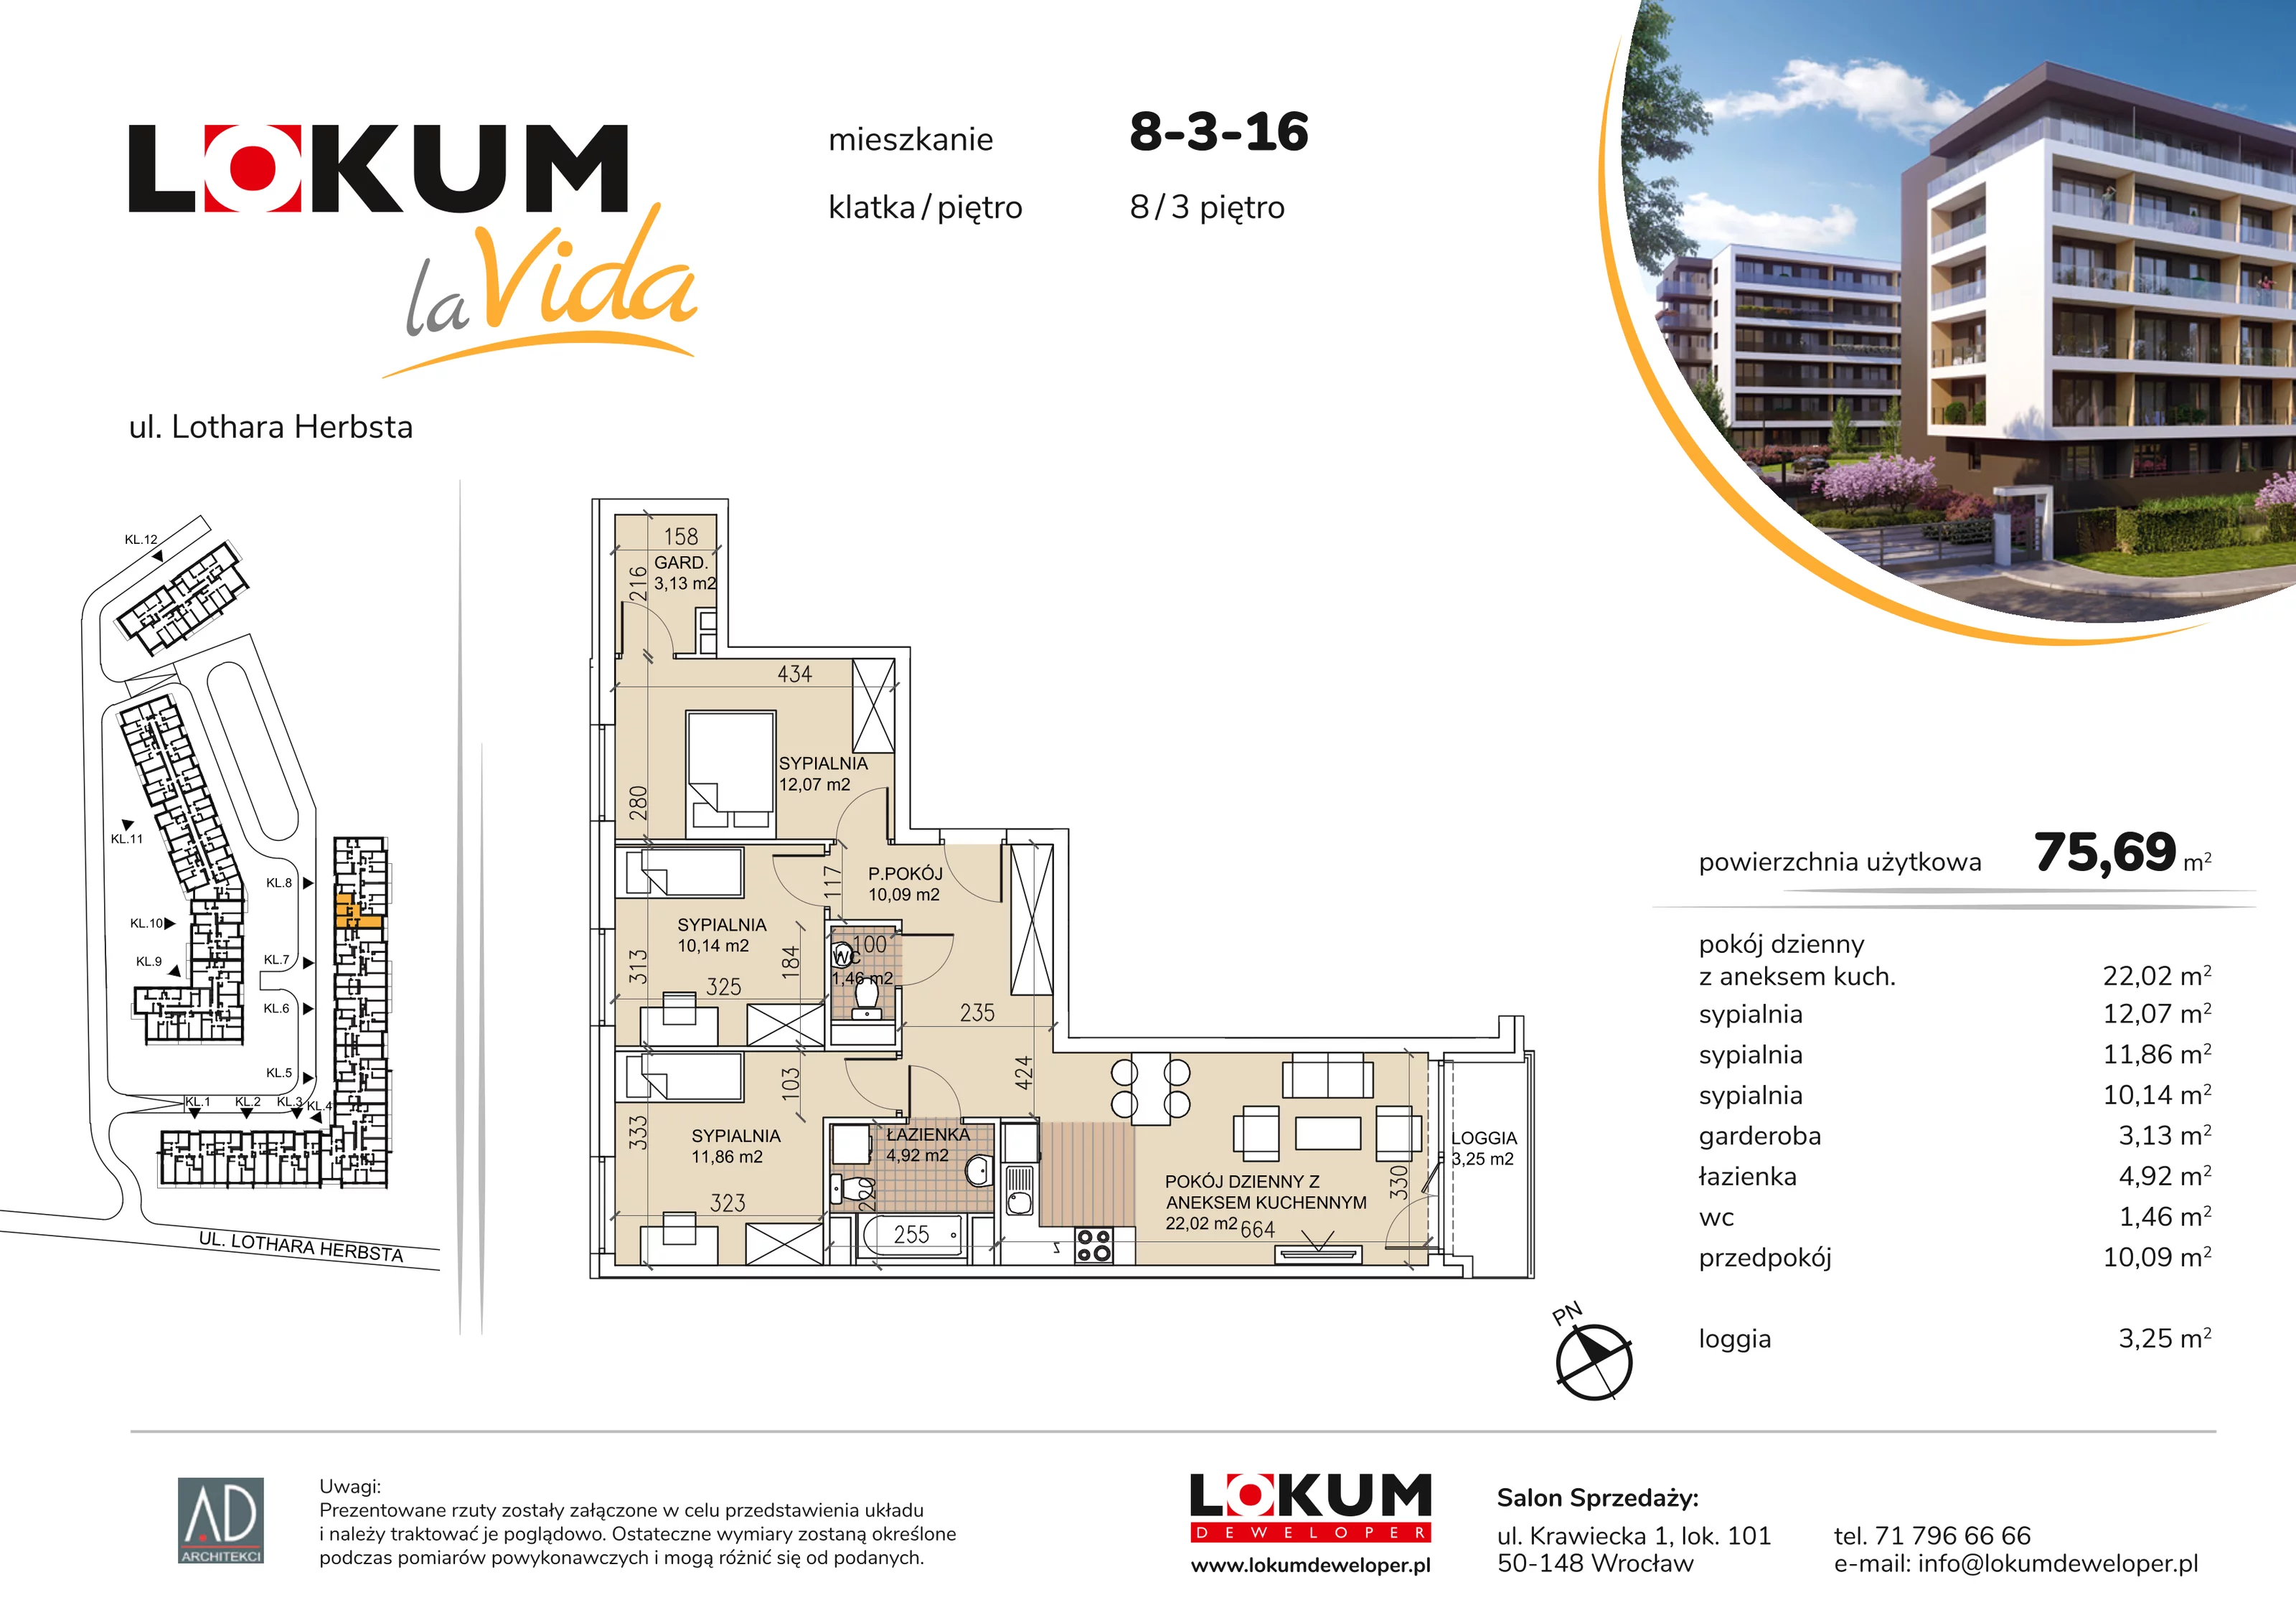 Mieszkanie 75,69 m², piętro 3, oferta nr 8-3-16, Lokum la Vida, Wrocław, Sołtysowice, ul. Lothara Herbsta